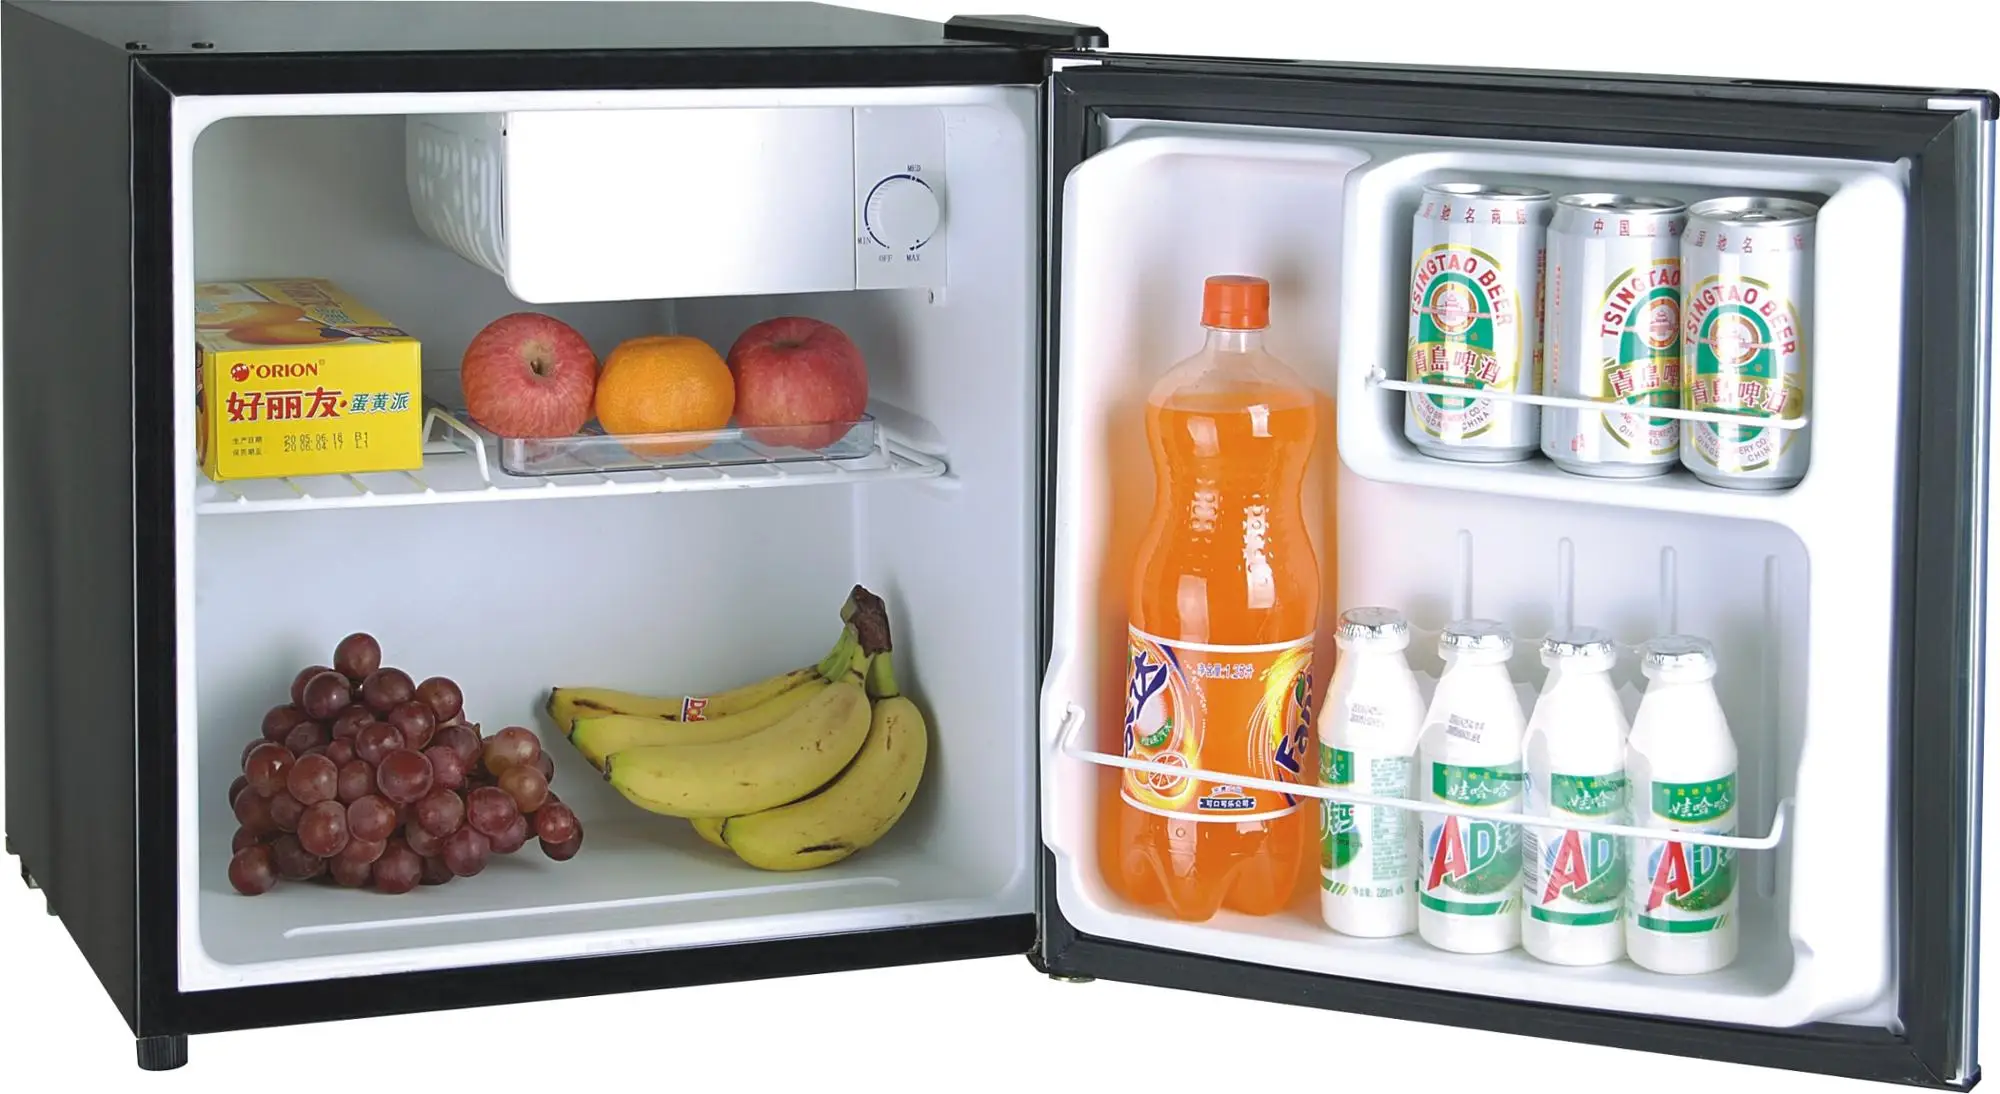 シングルドアコンパクト冷蔵庫冷凍庫なし - Buy シングルドア冷蔵庫冷凍庫なし、コンパクト冷蔵庫、シングルドアコンパクト冷蔵庫